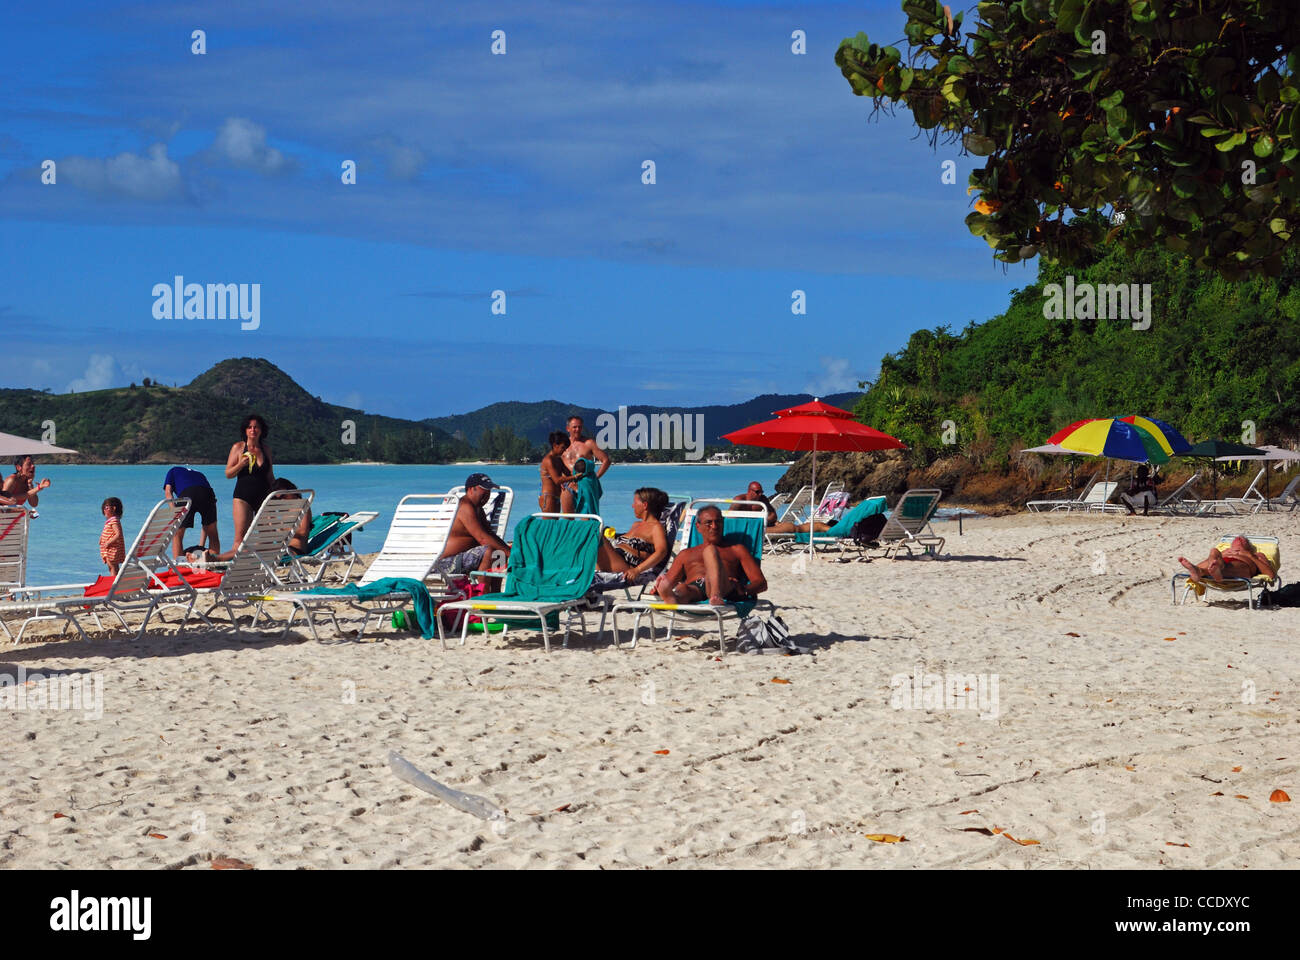 Los turistas en la playa, St. Johns, Antigua, Islas de Sotavento, Caribe, West Indies. Foto de stock